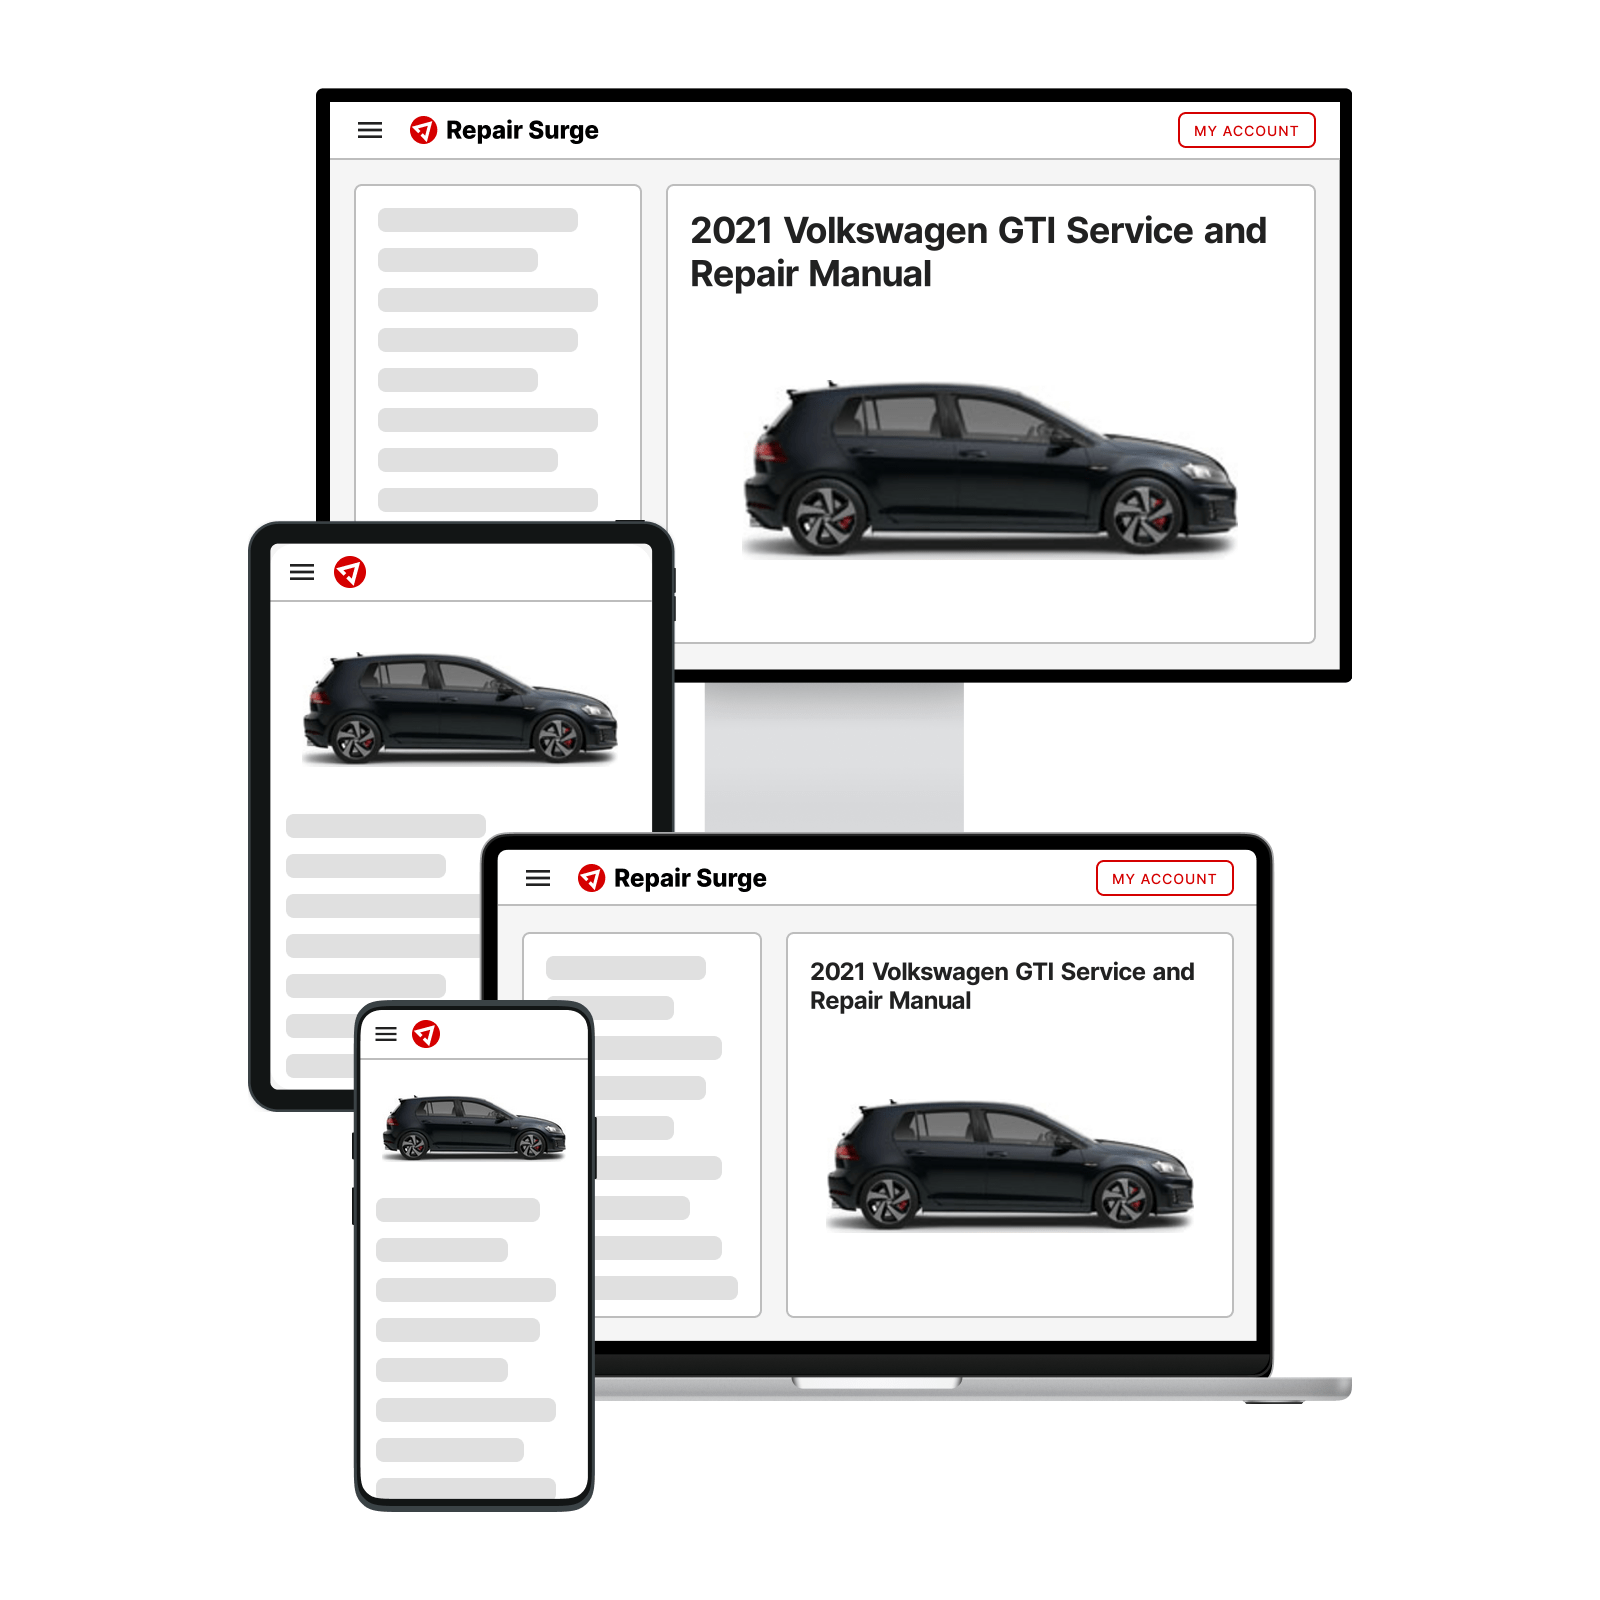 2021 Volkswagen GTI service and repair manual hero image